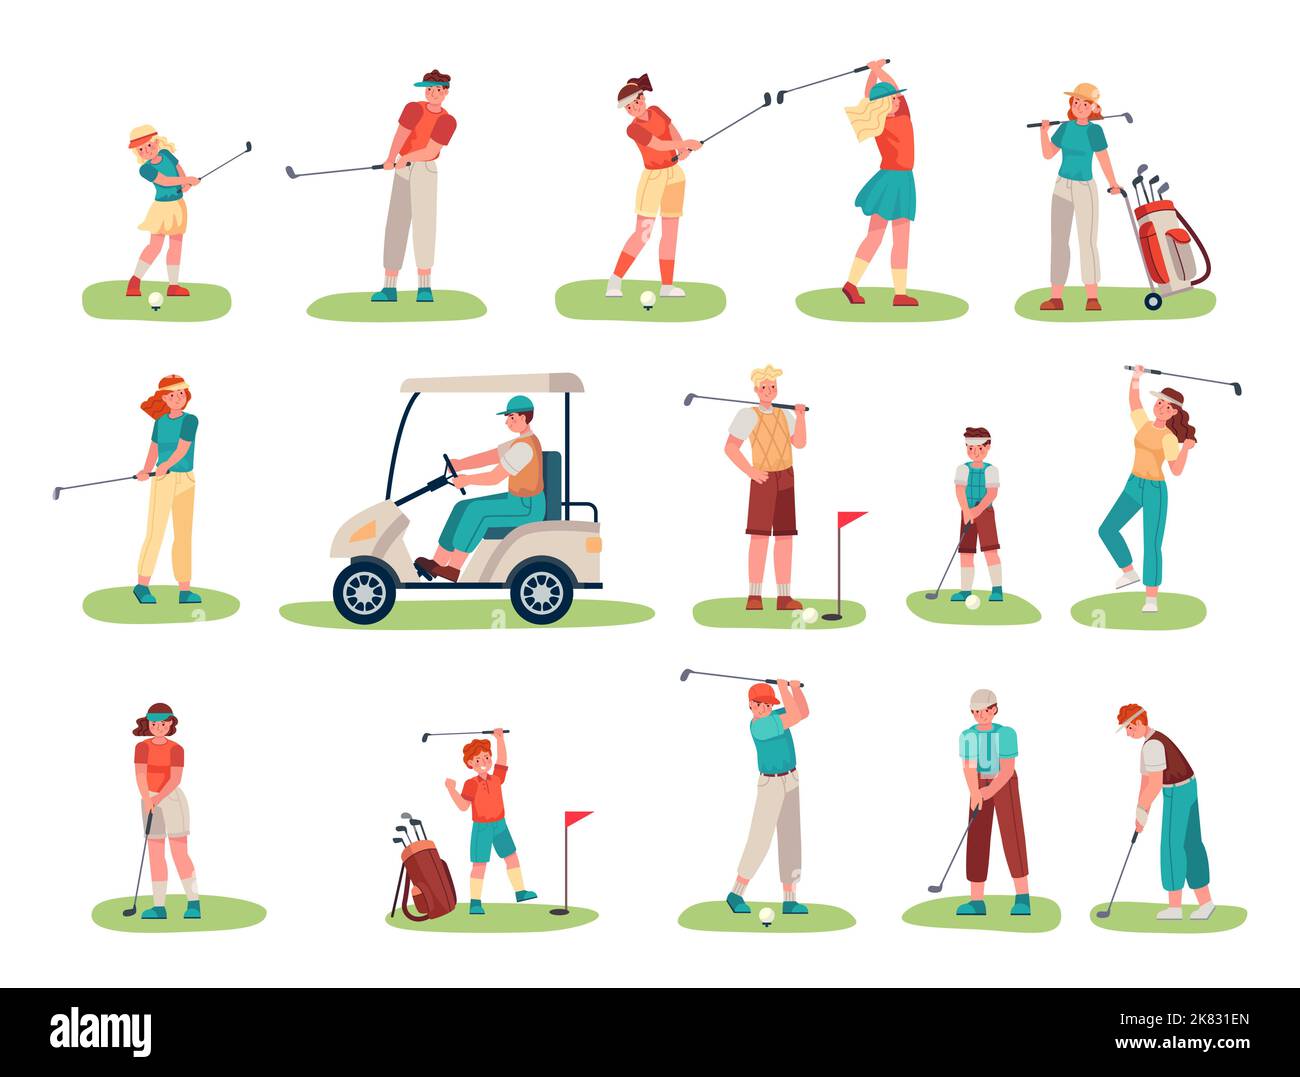 Personaggi dei giocatori di golf. Bambini e sportivi adolescenti con attrezzature per giocare a golf sul prato. Carretto da equitazione personaggio maschile Illustrazione Vettoriale